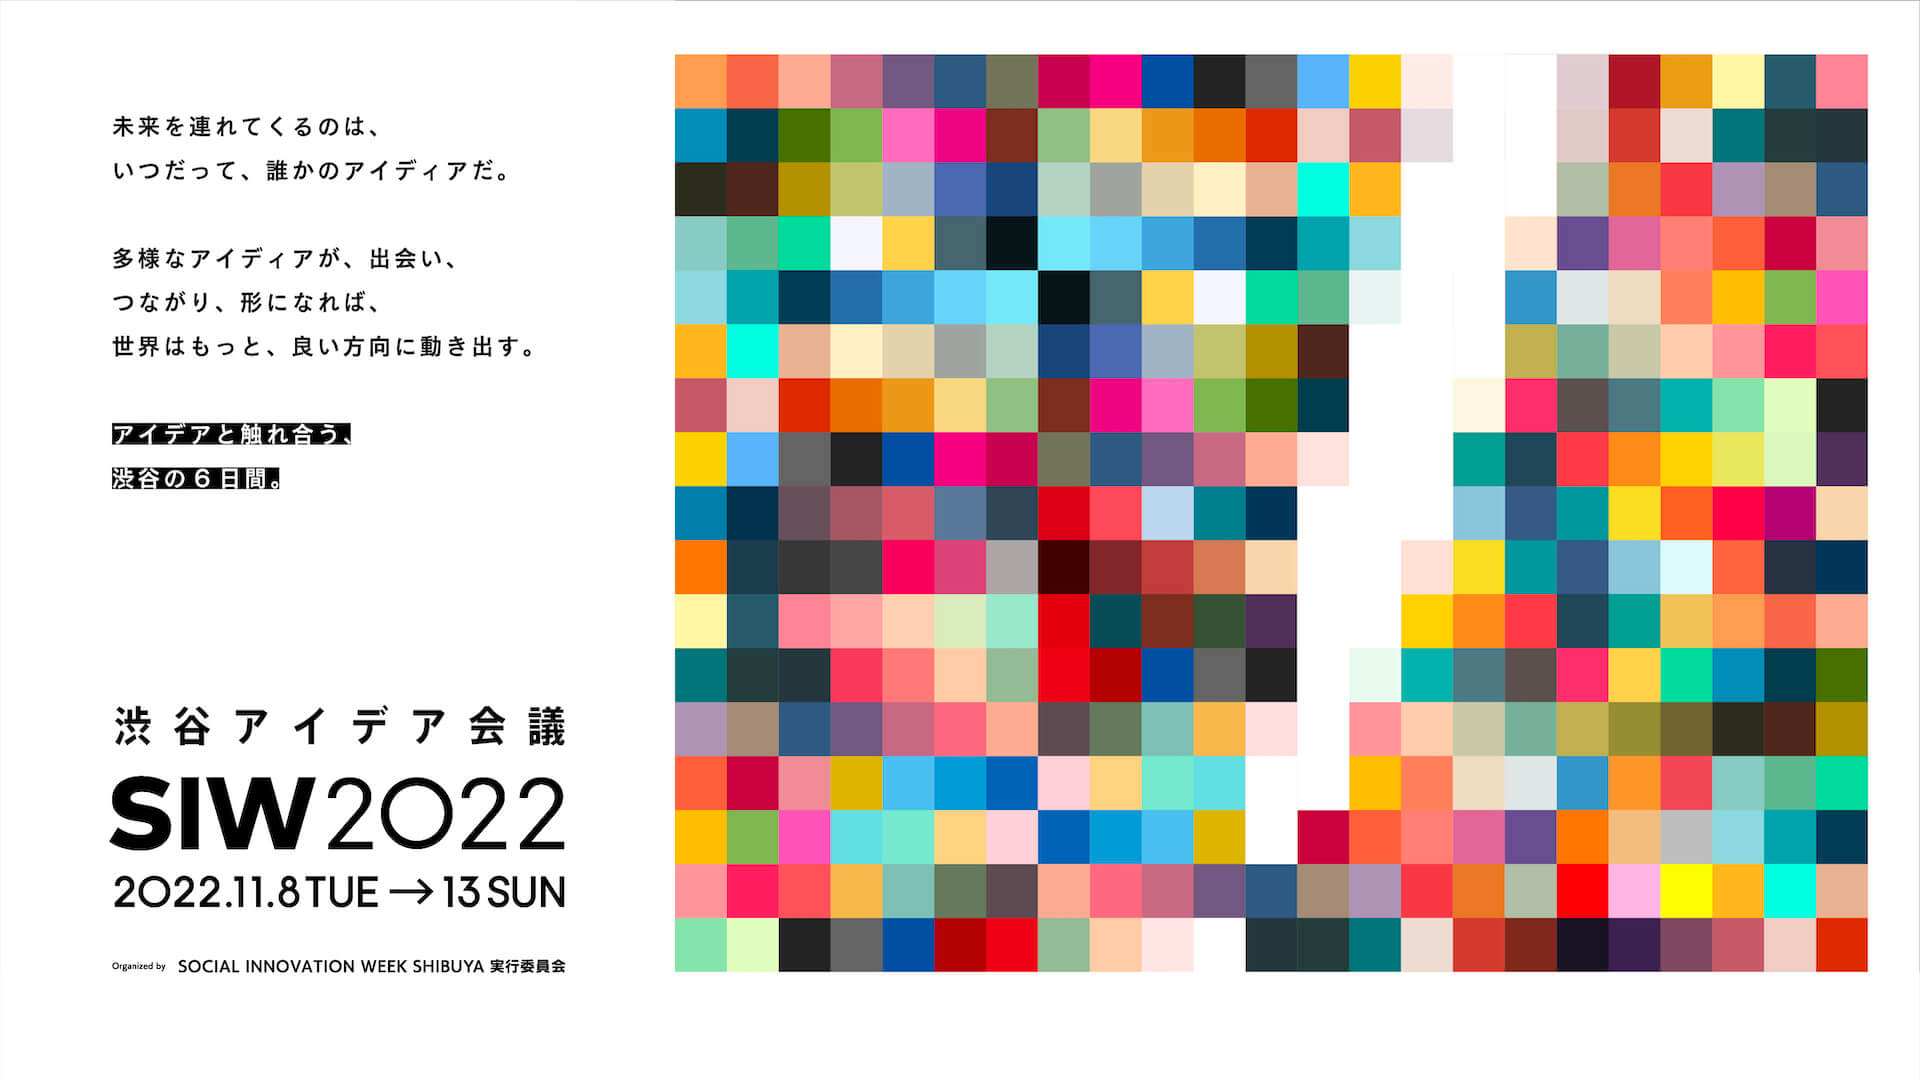 渋谷アイデア会議「SOCIAL INNOVATION WEEK SHIBUYA 2022」フェロー発表｜「アイデアと触れ合う、渋谷の6日間。」開催 culture20922-social-innovation-week-shibuya-02